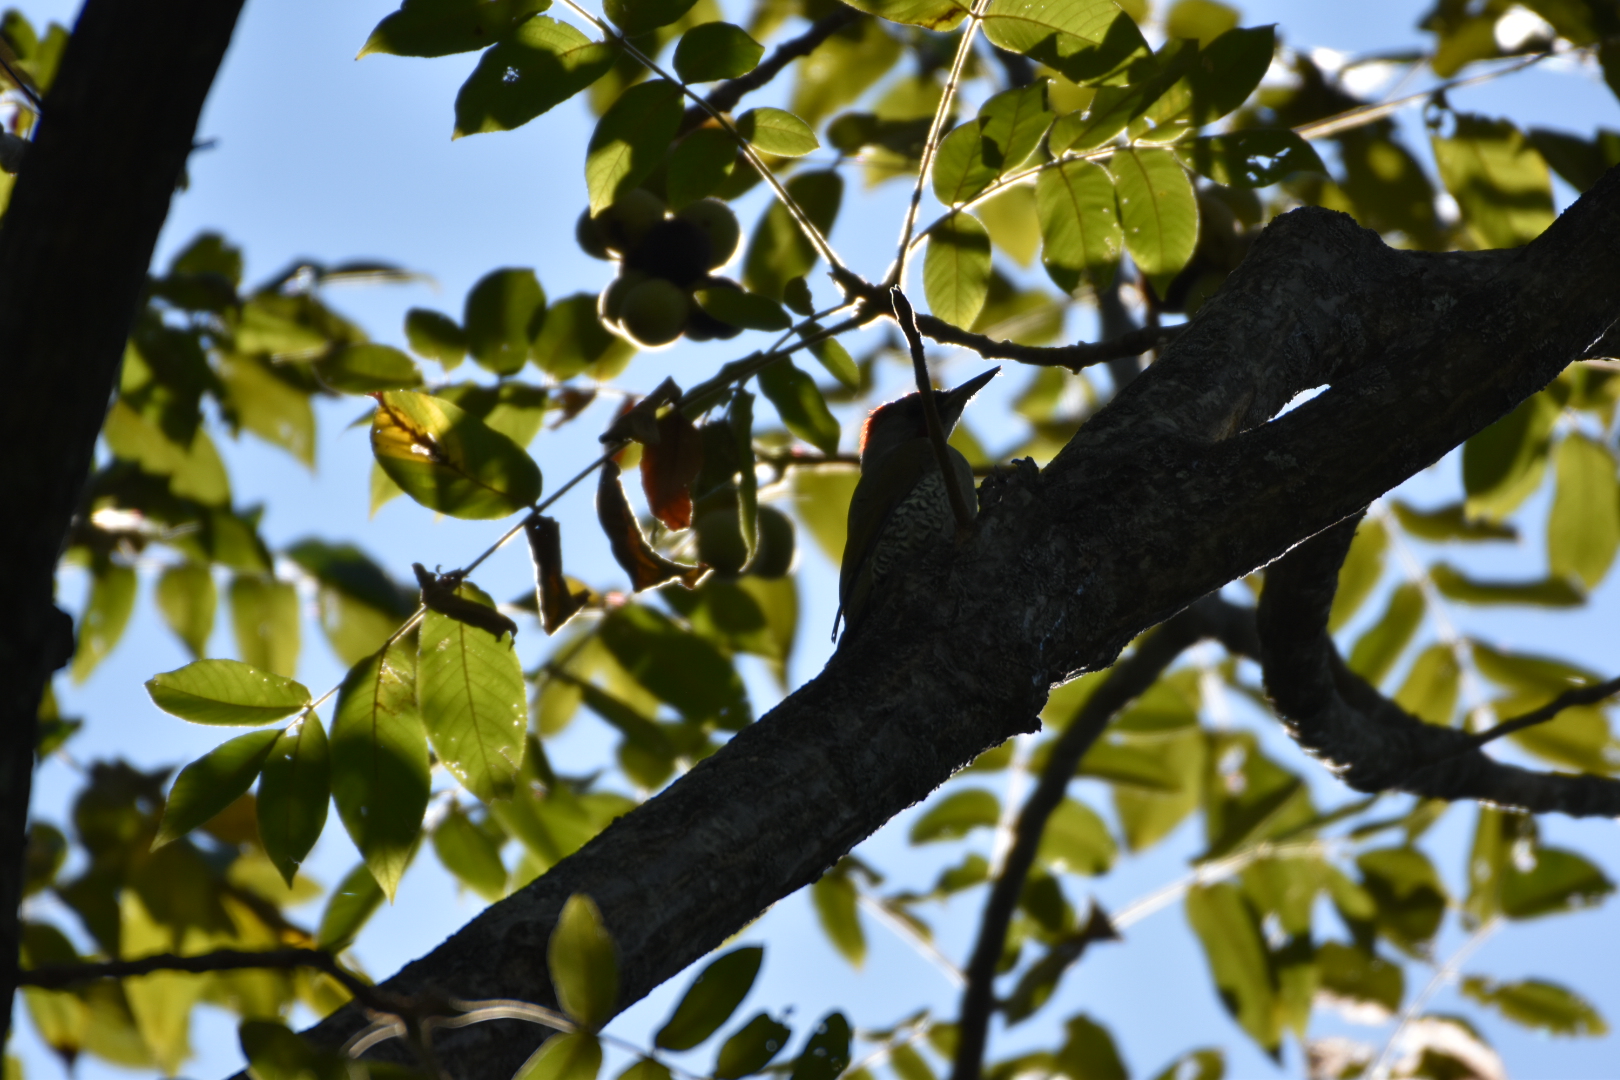 Photo of Japanese Green Woodpecker at 松本市アルプス公園 by nami0113